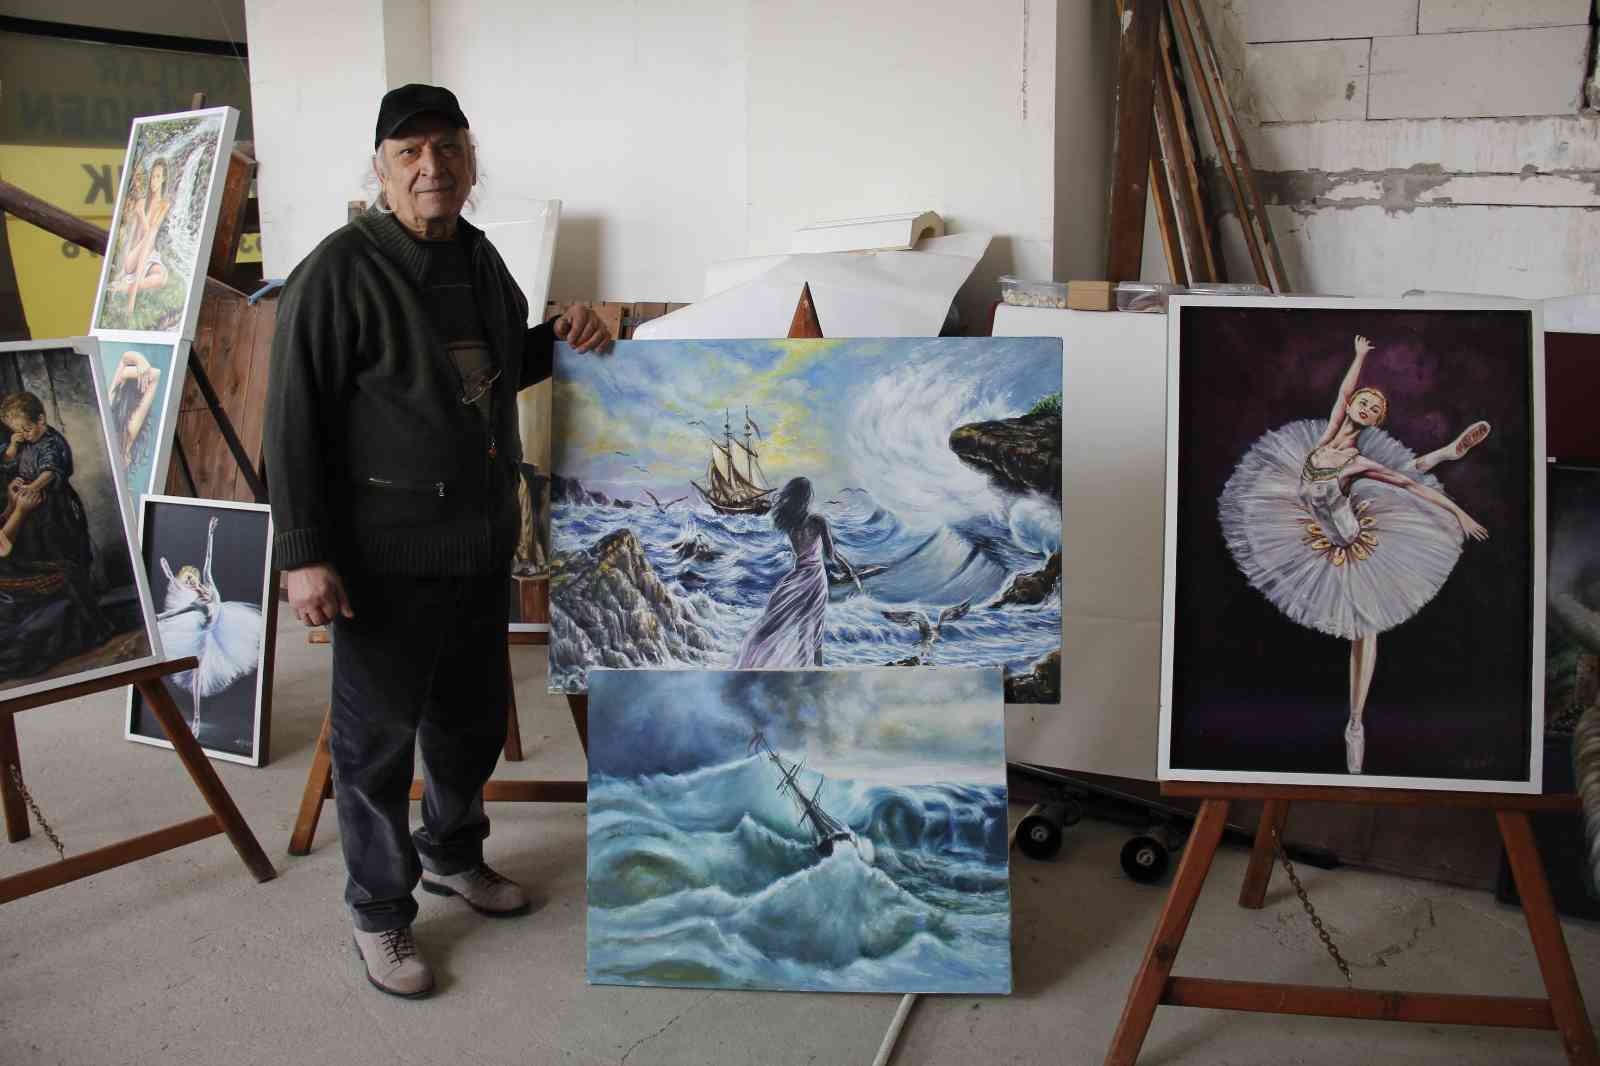 Kocaeli’de yaşayan 77 yaşındaki Halis Yıldız, ilkokul yıllarında hobi olarak başladığı ressamlığı 54 yıldır profesyonel şekilde sürdürüyor ...